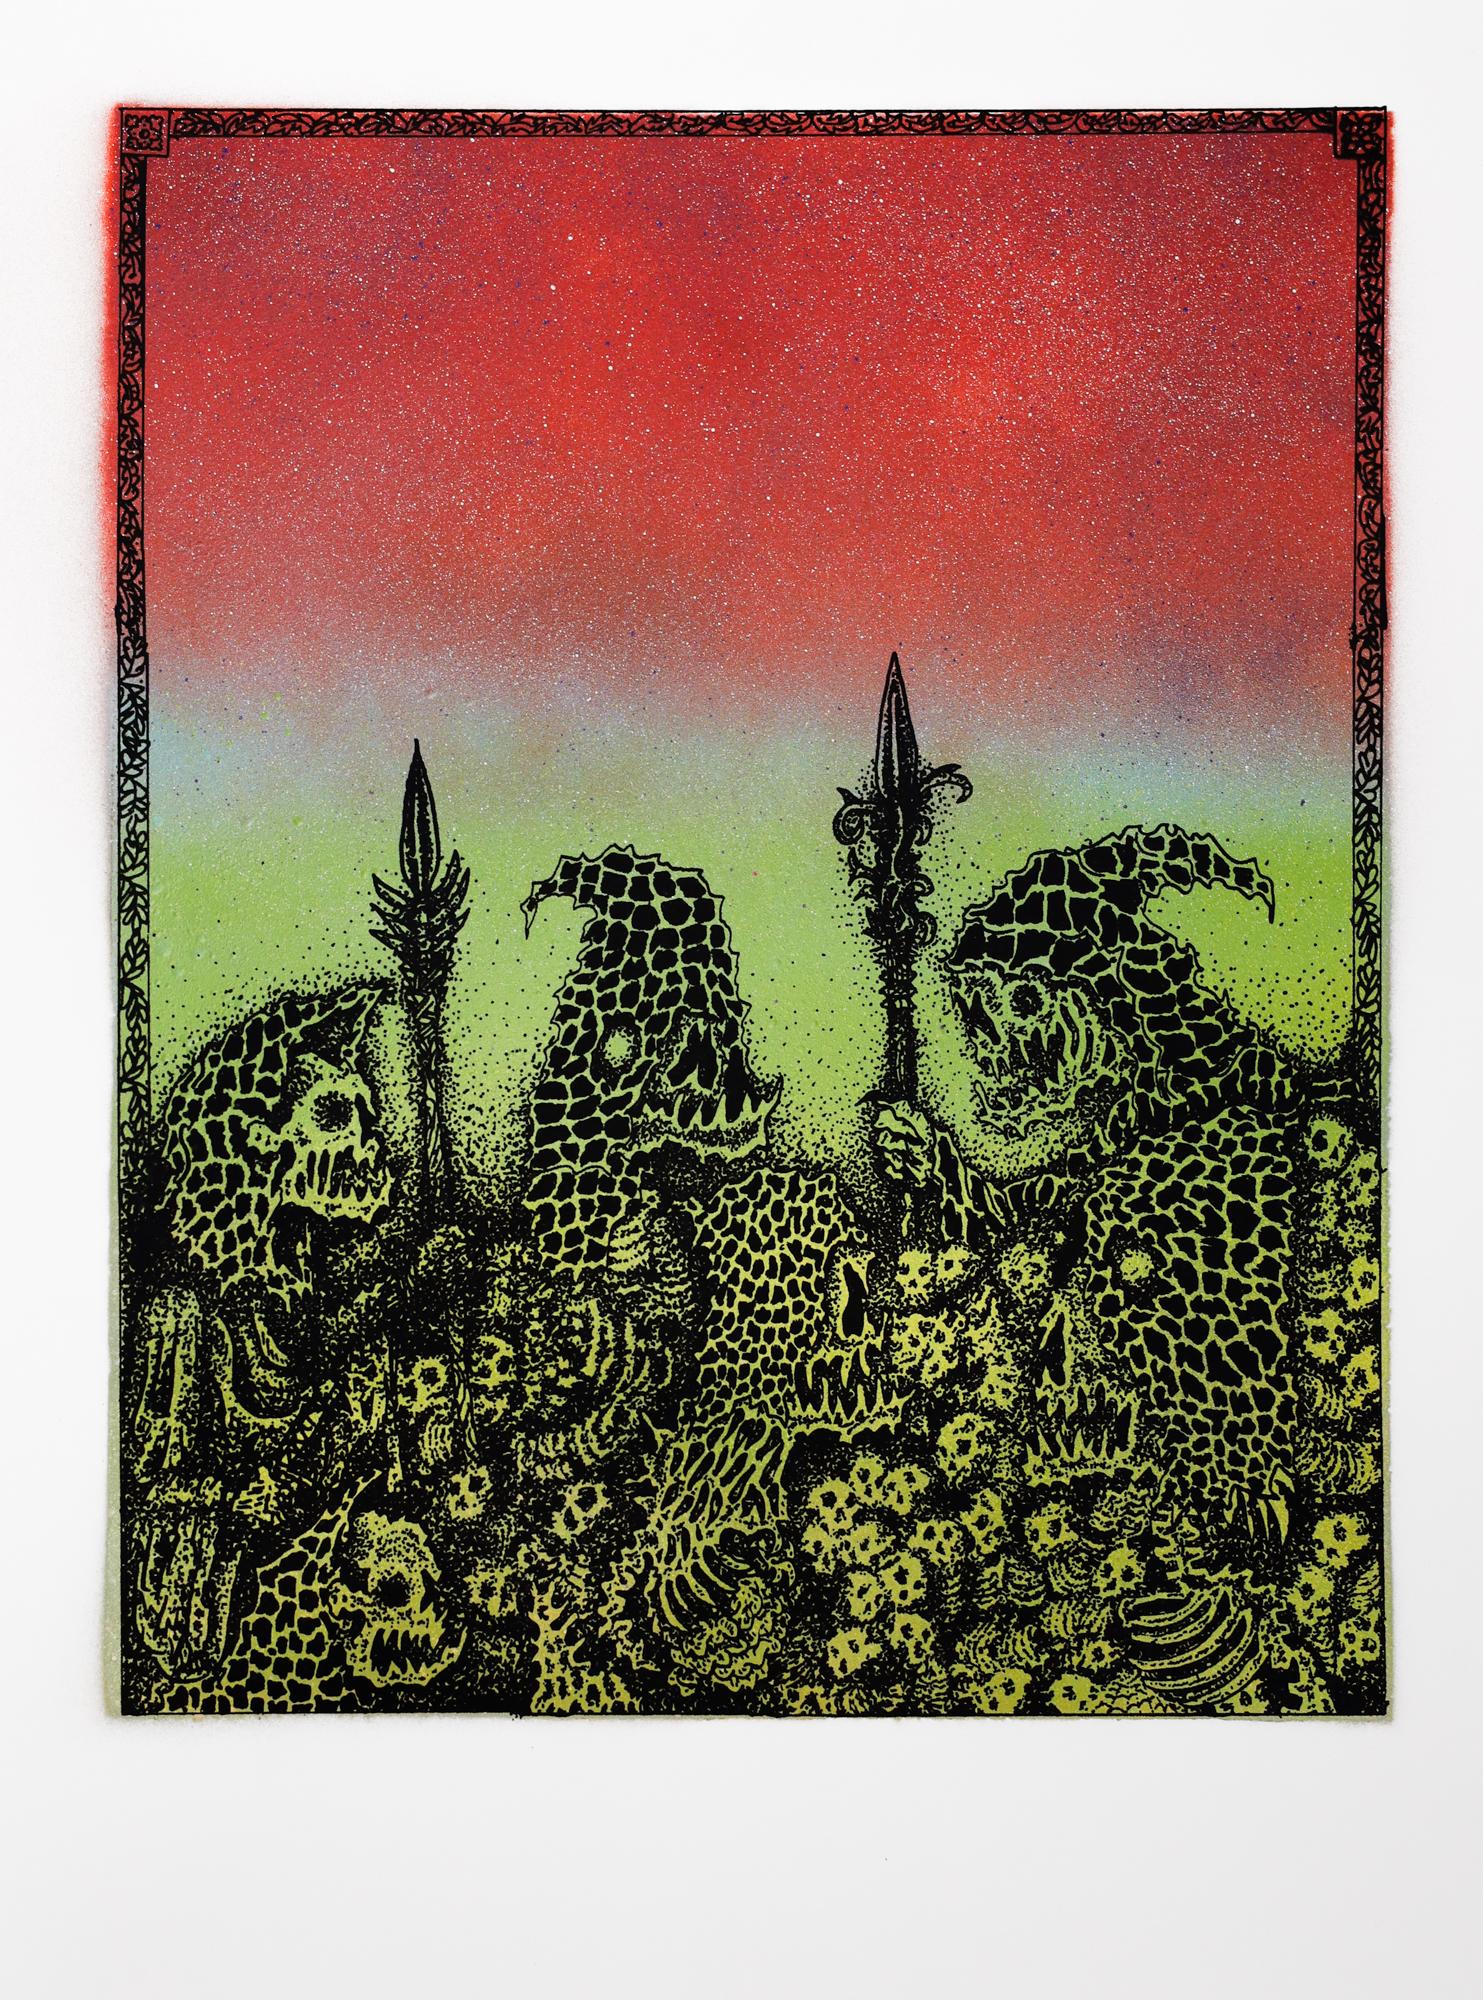 Dieses Werk mit dem Titel "Jake Yeager Untitled 11" ist ein Originalkunstwerk von Jake Yeager und wurde mit Sprühfarbe und Siebdruck hergestellt. Dieses Stück misst 24 "h x 18 "b.

Der 1997 in der Arch Street 1026 in Philadelphias Chinatown